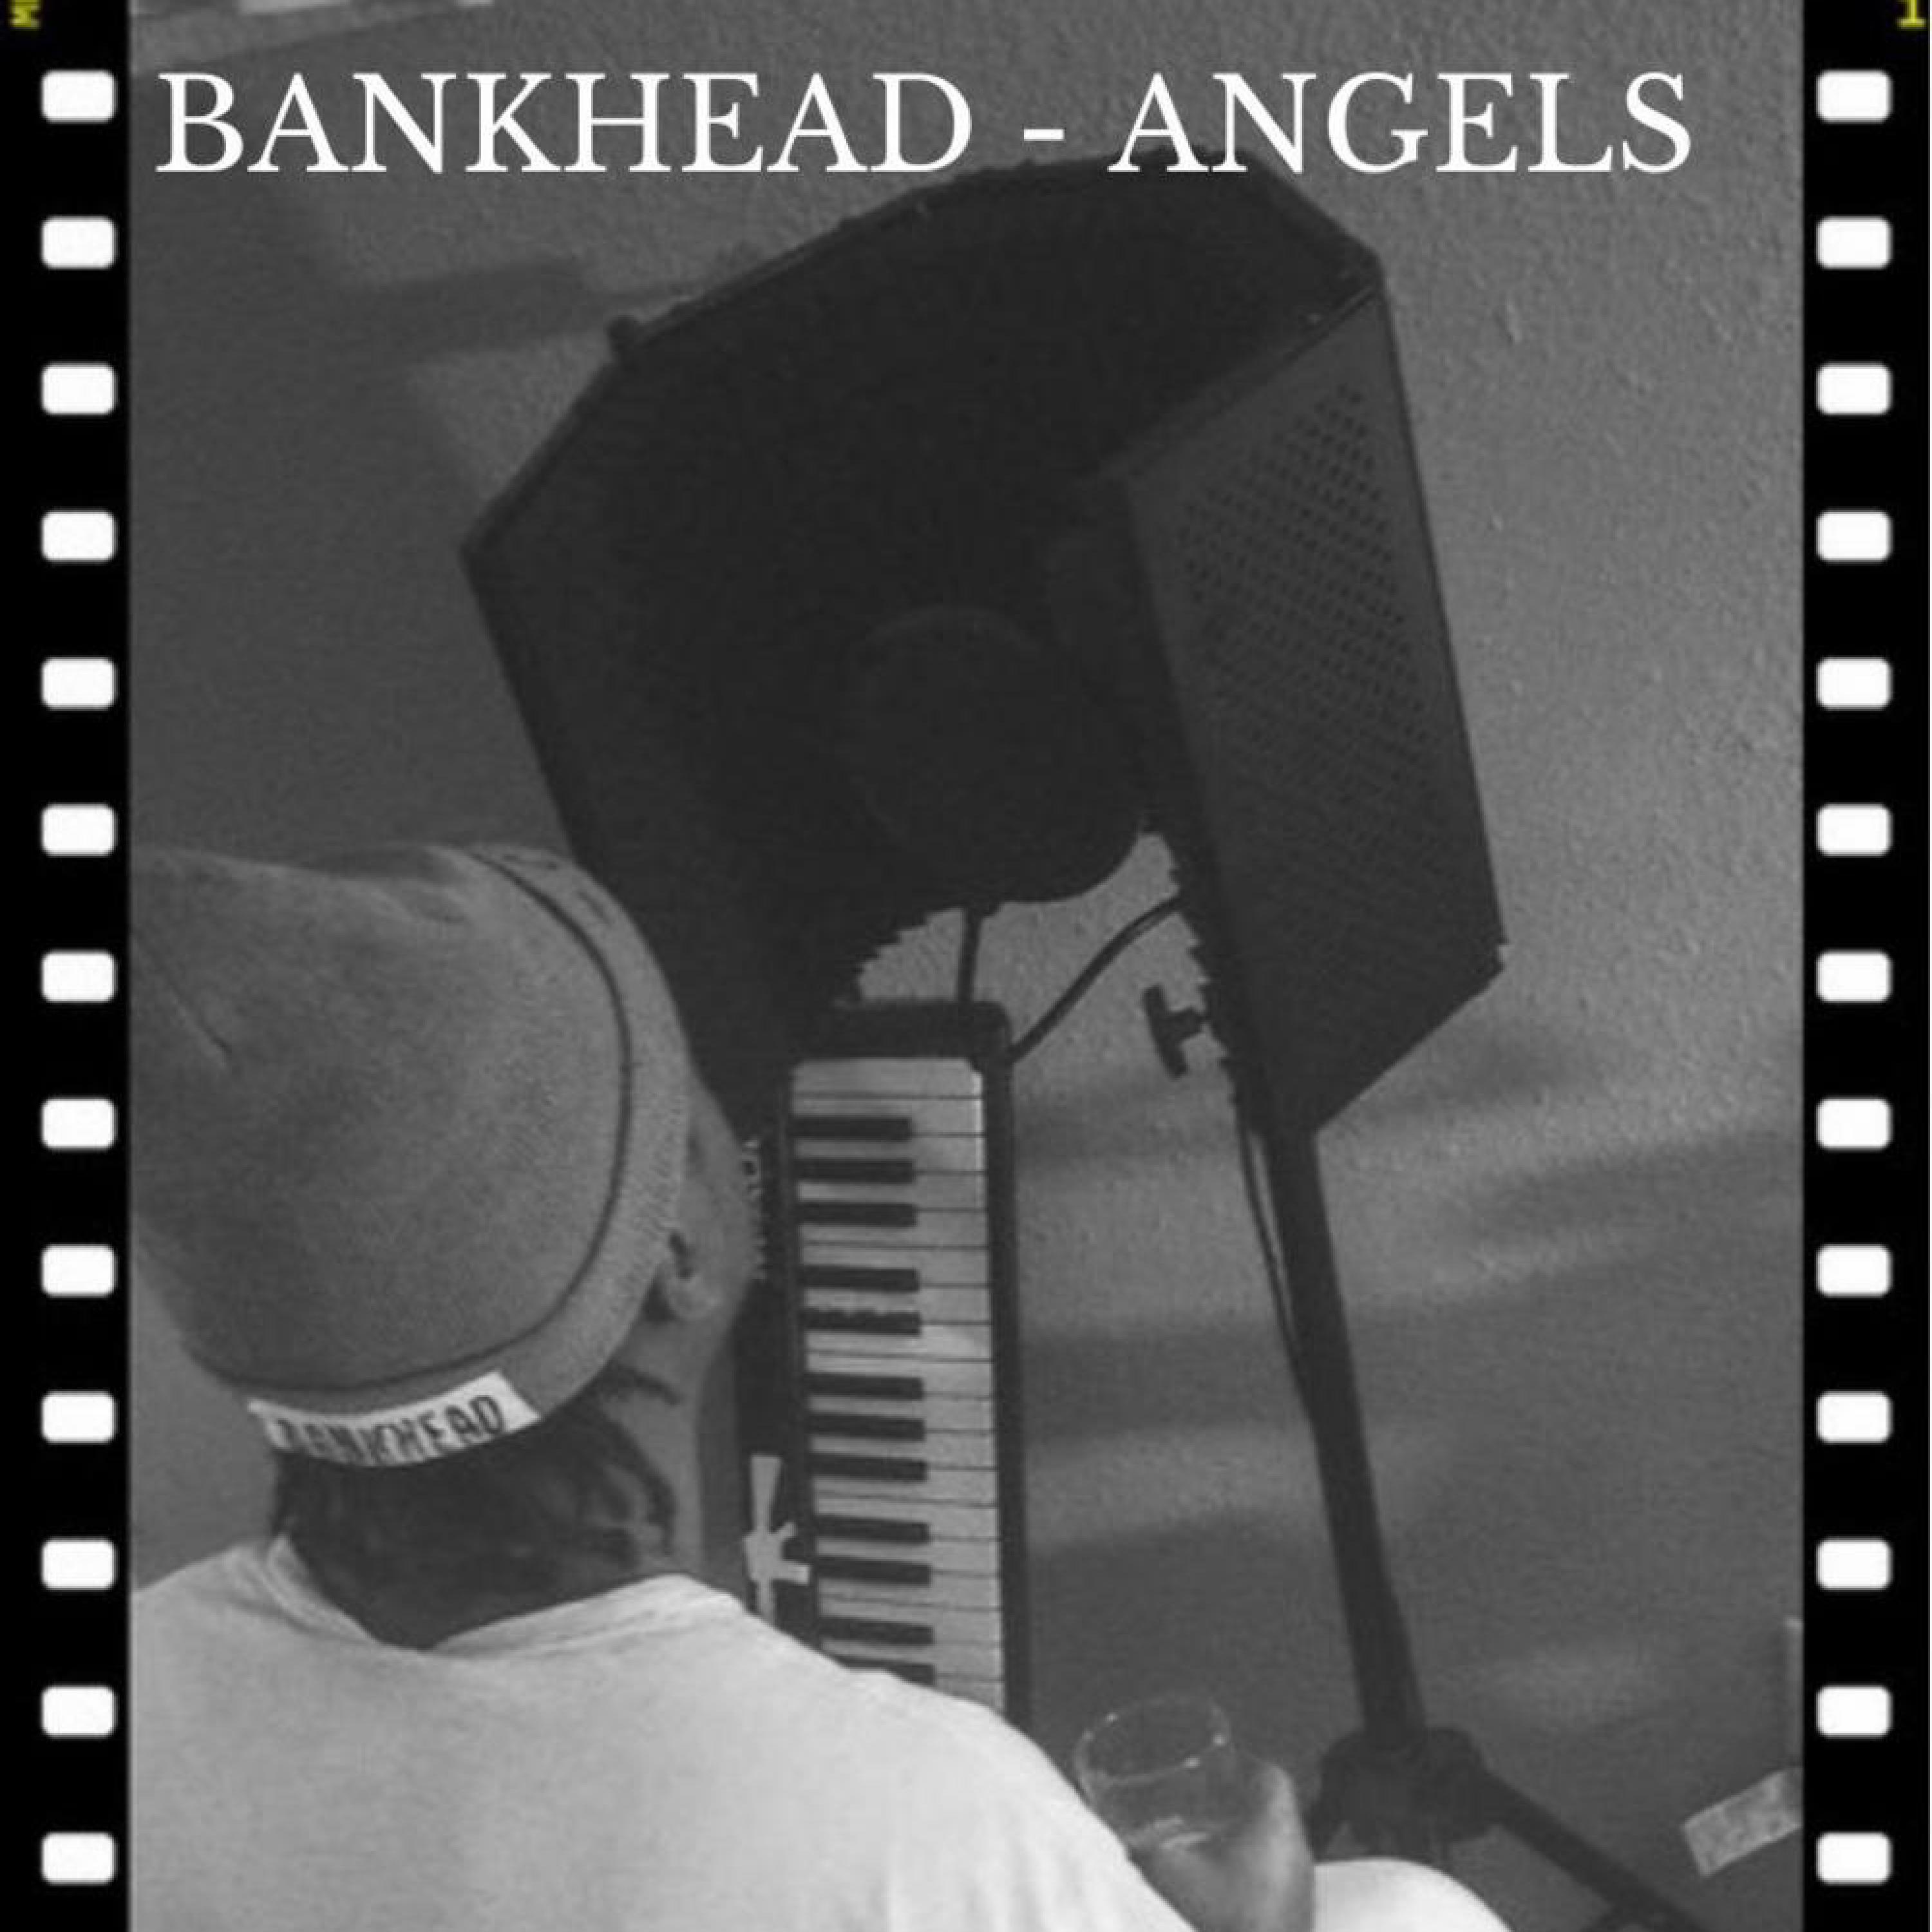 Bankhead - Angels